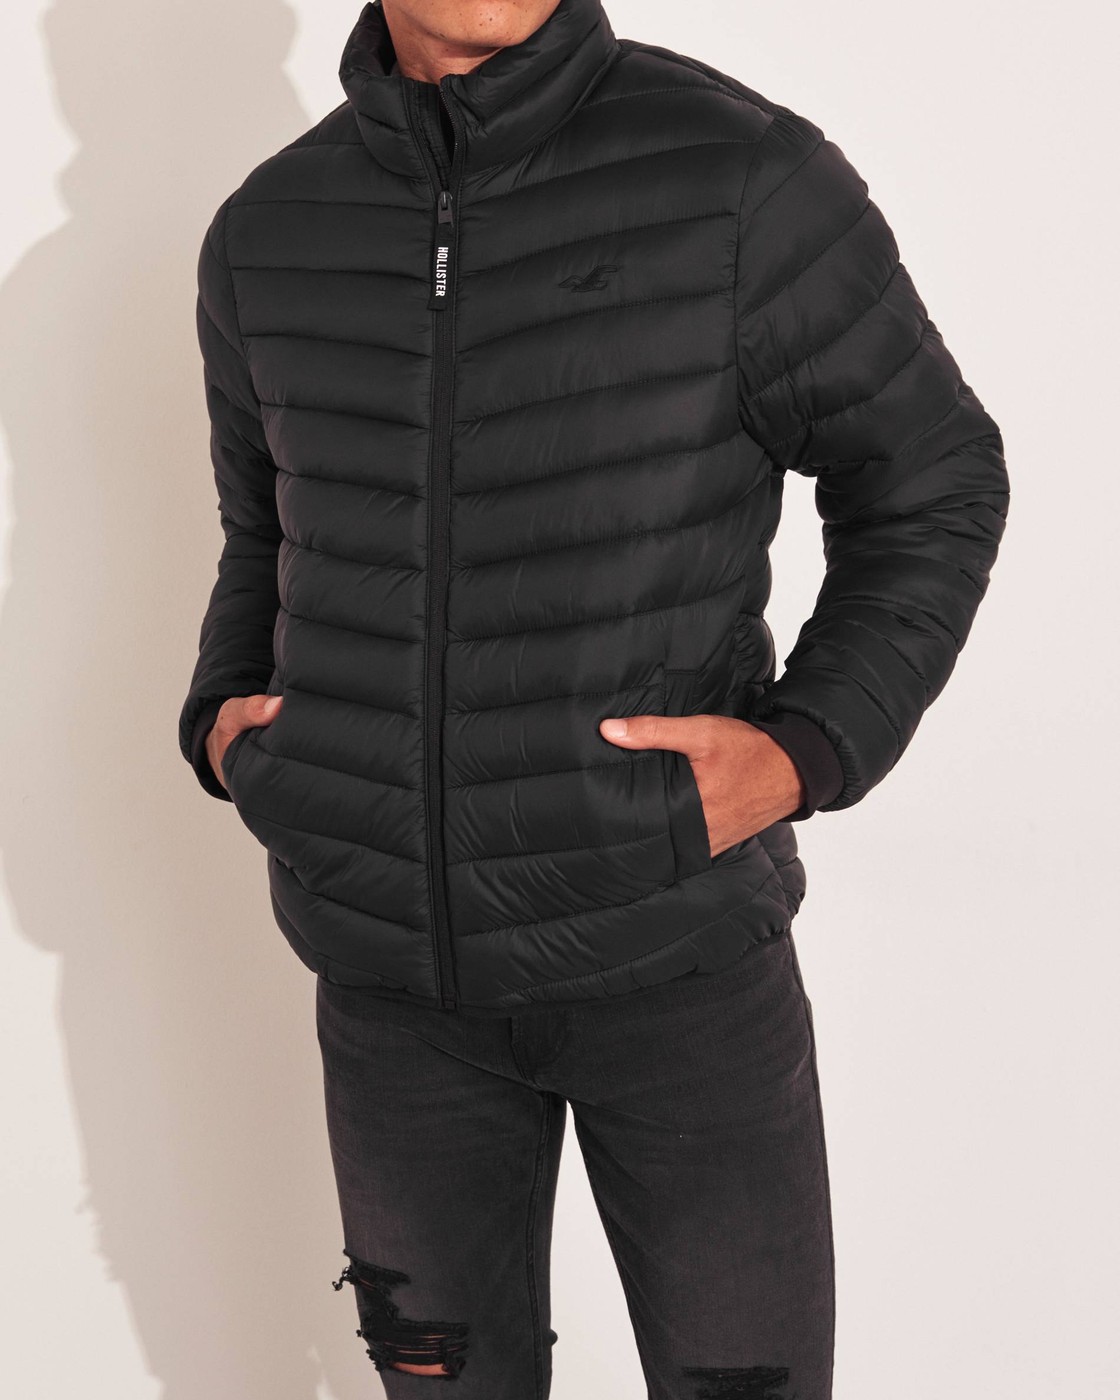 Куртка демисезонная - мужская куртка Hollister, L, L